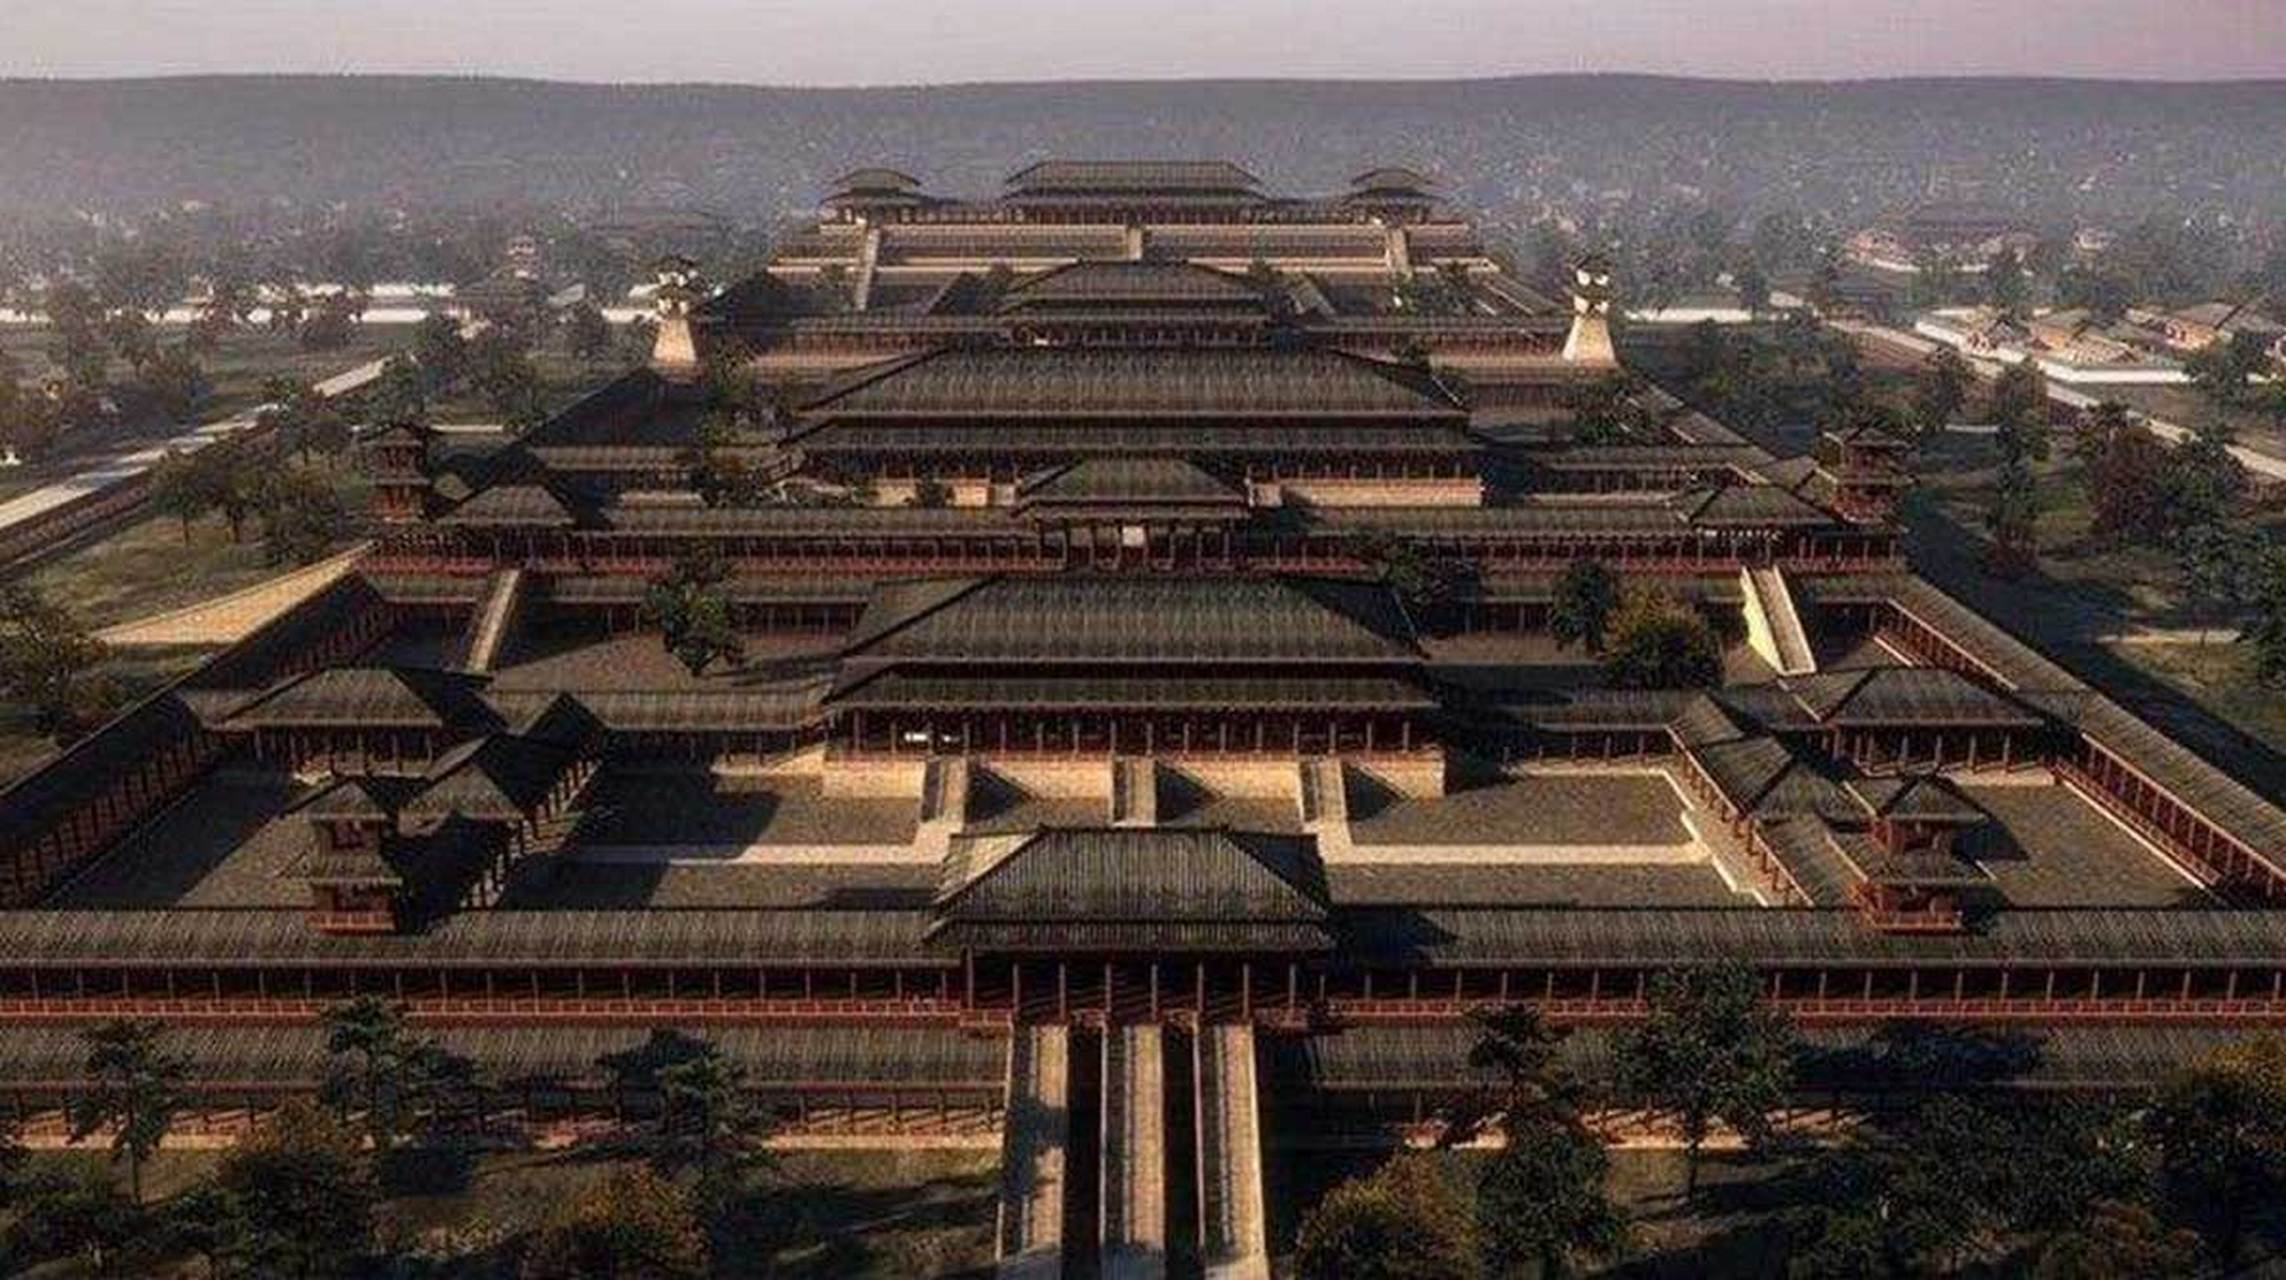 可知道未央宫的规模是紫禁城的八倍,而未央宫只占汉朝皇家宫殿的四分